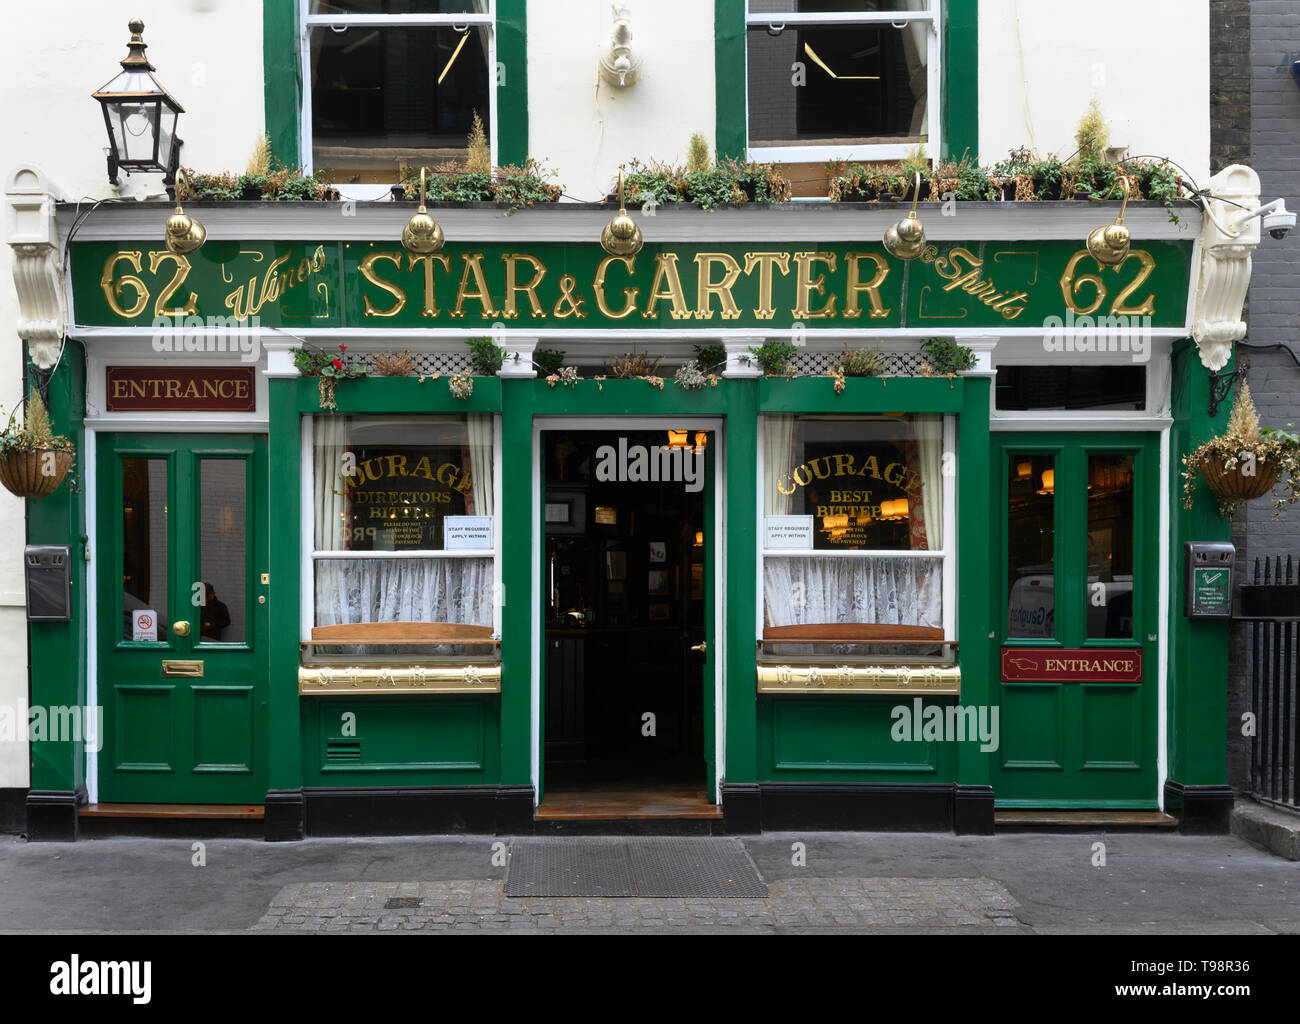 Star et porte-jarretelles public house, Pologne Street, Soho, Londres, Angleterre, Royaume-Uni. Banque D'Images